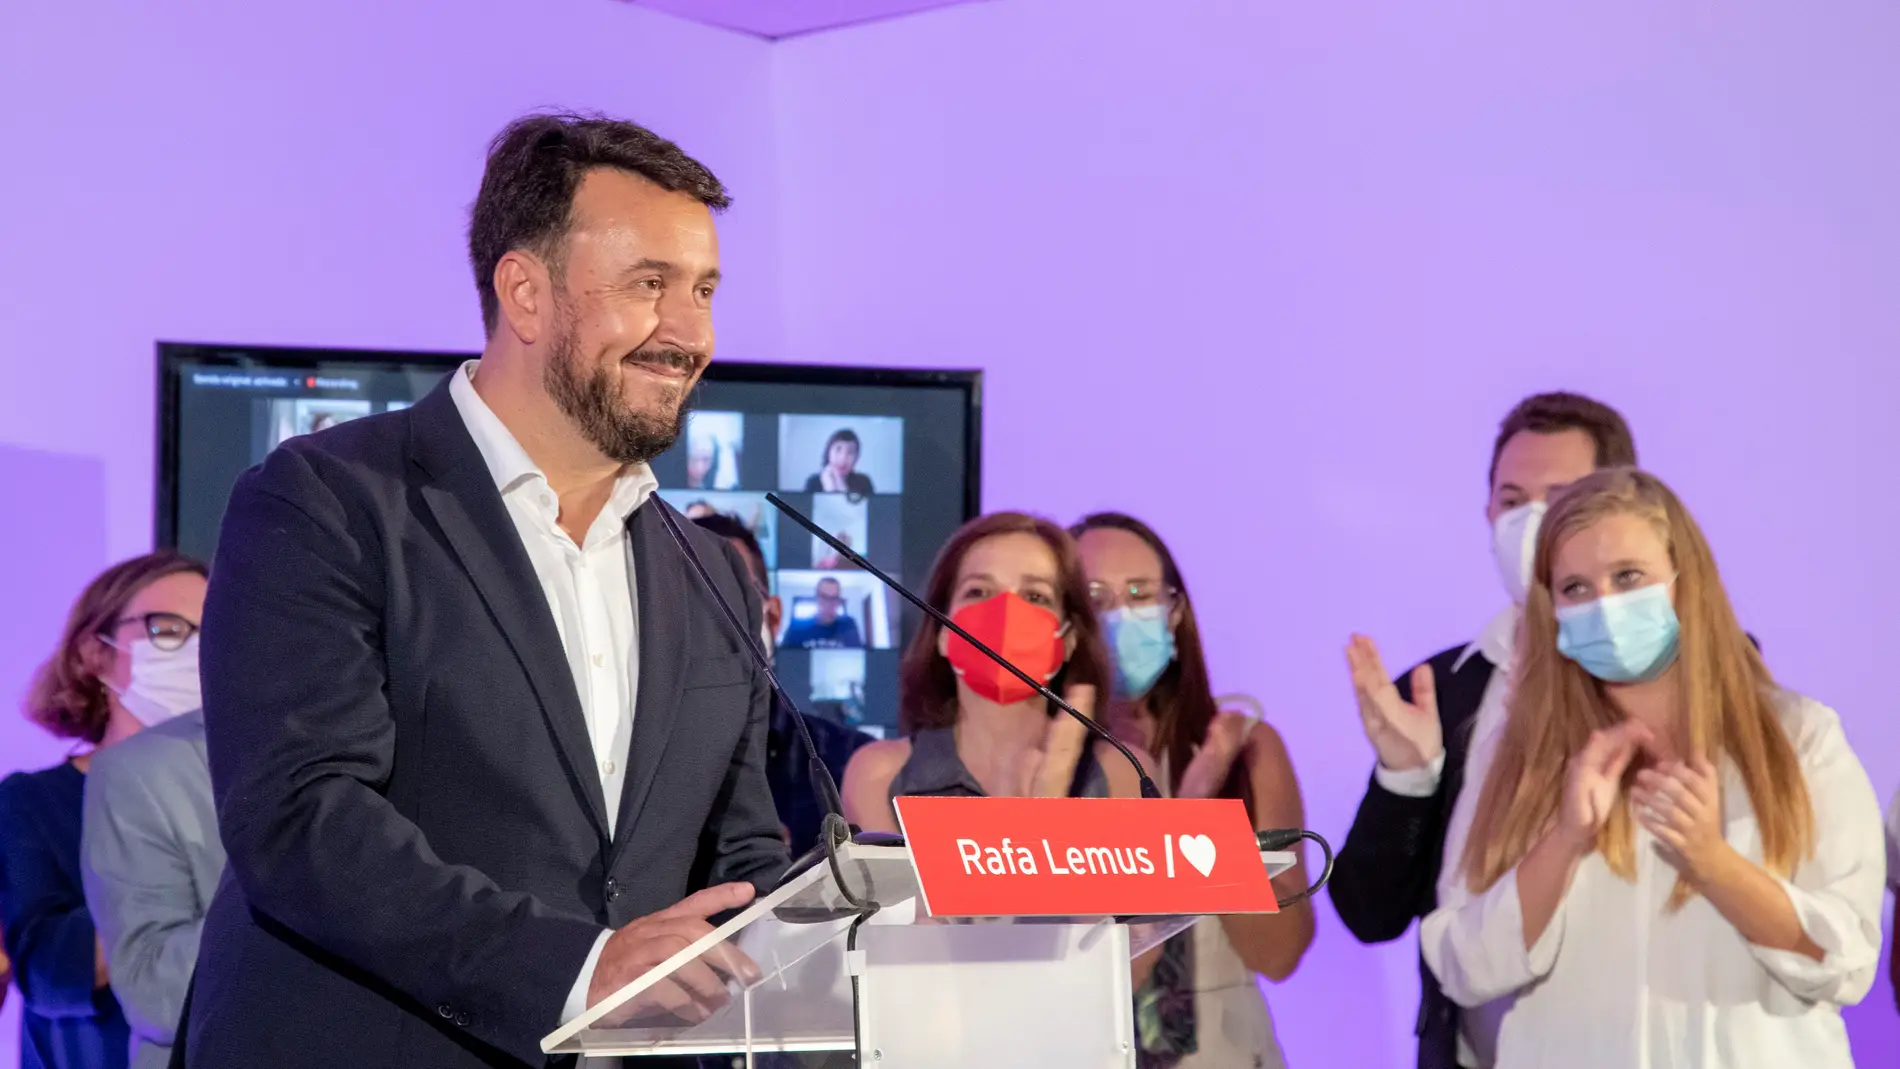 Rafael Lemus quiere volver a liderar el PSOE provincial de Badajoz con "unidad" y porque el modelo "ha funcionado"